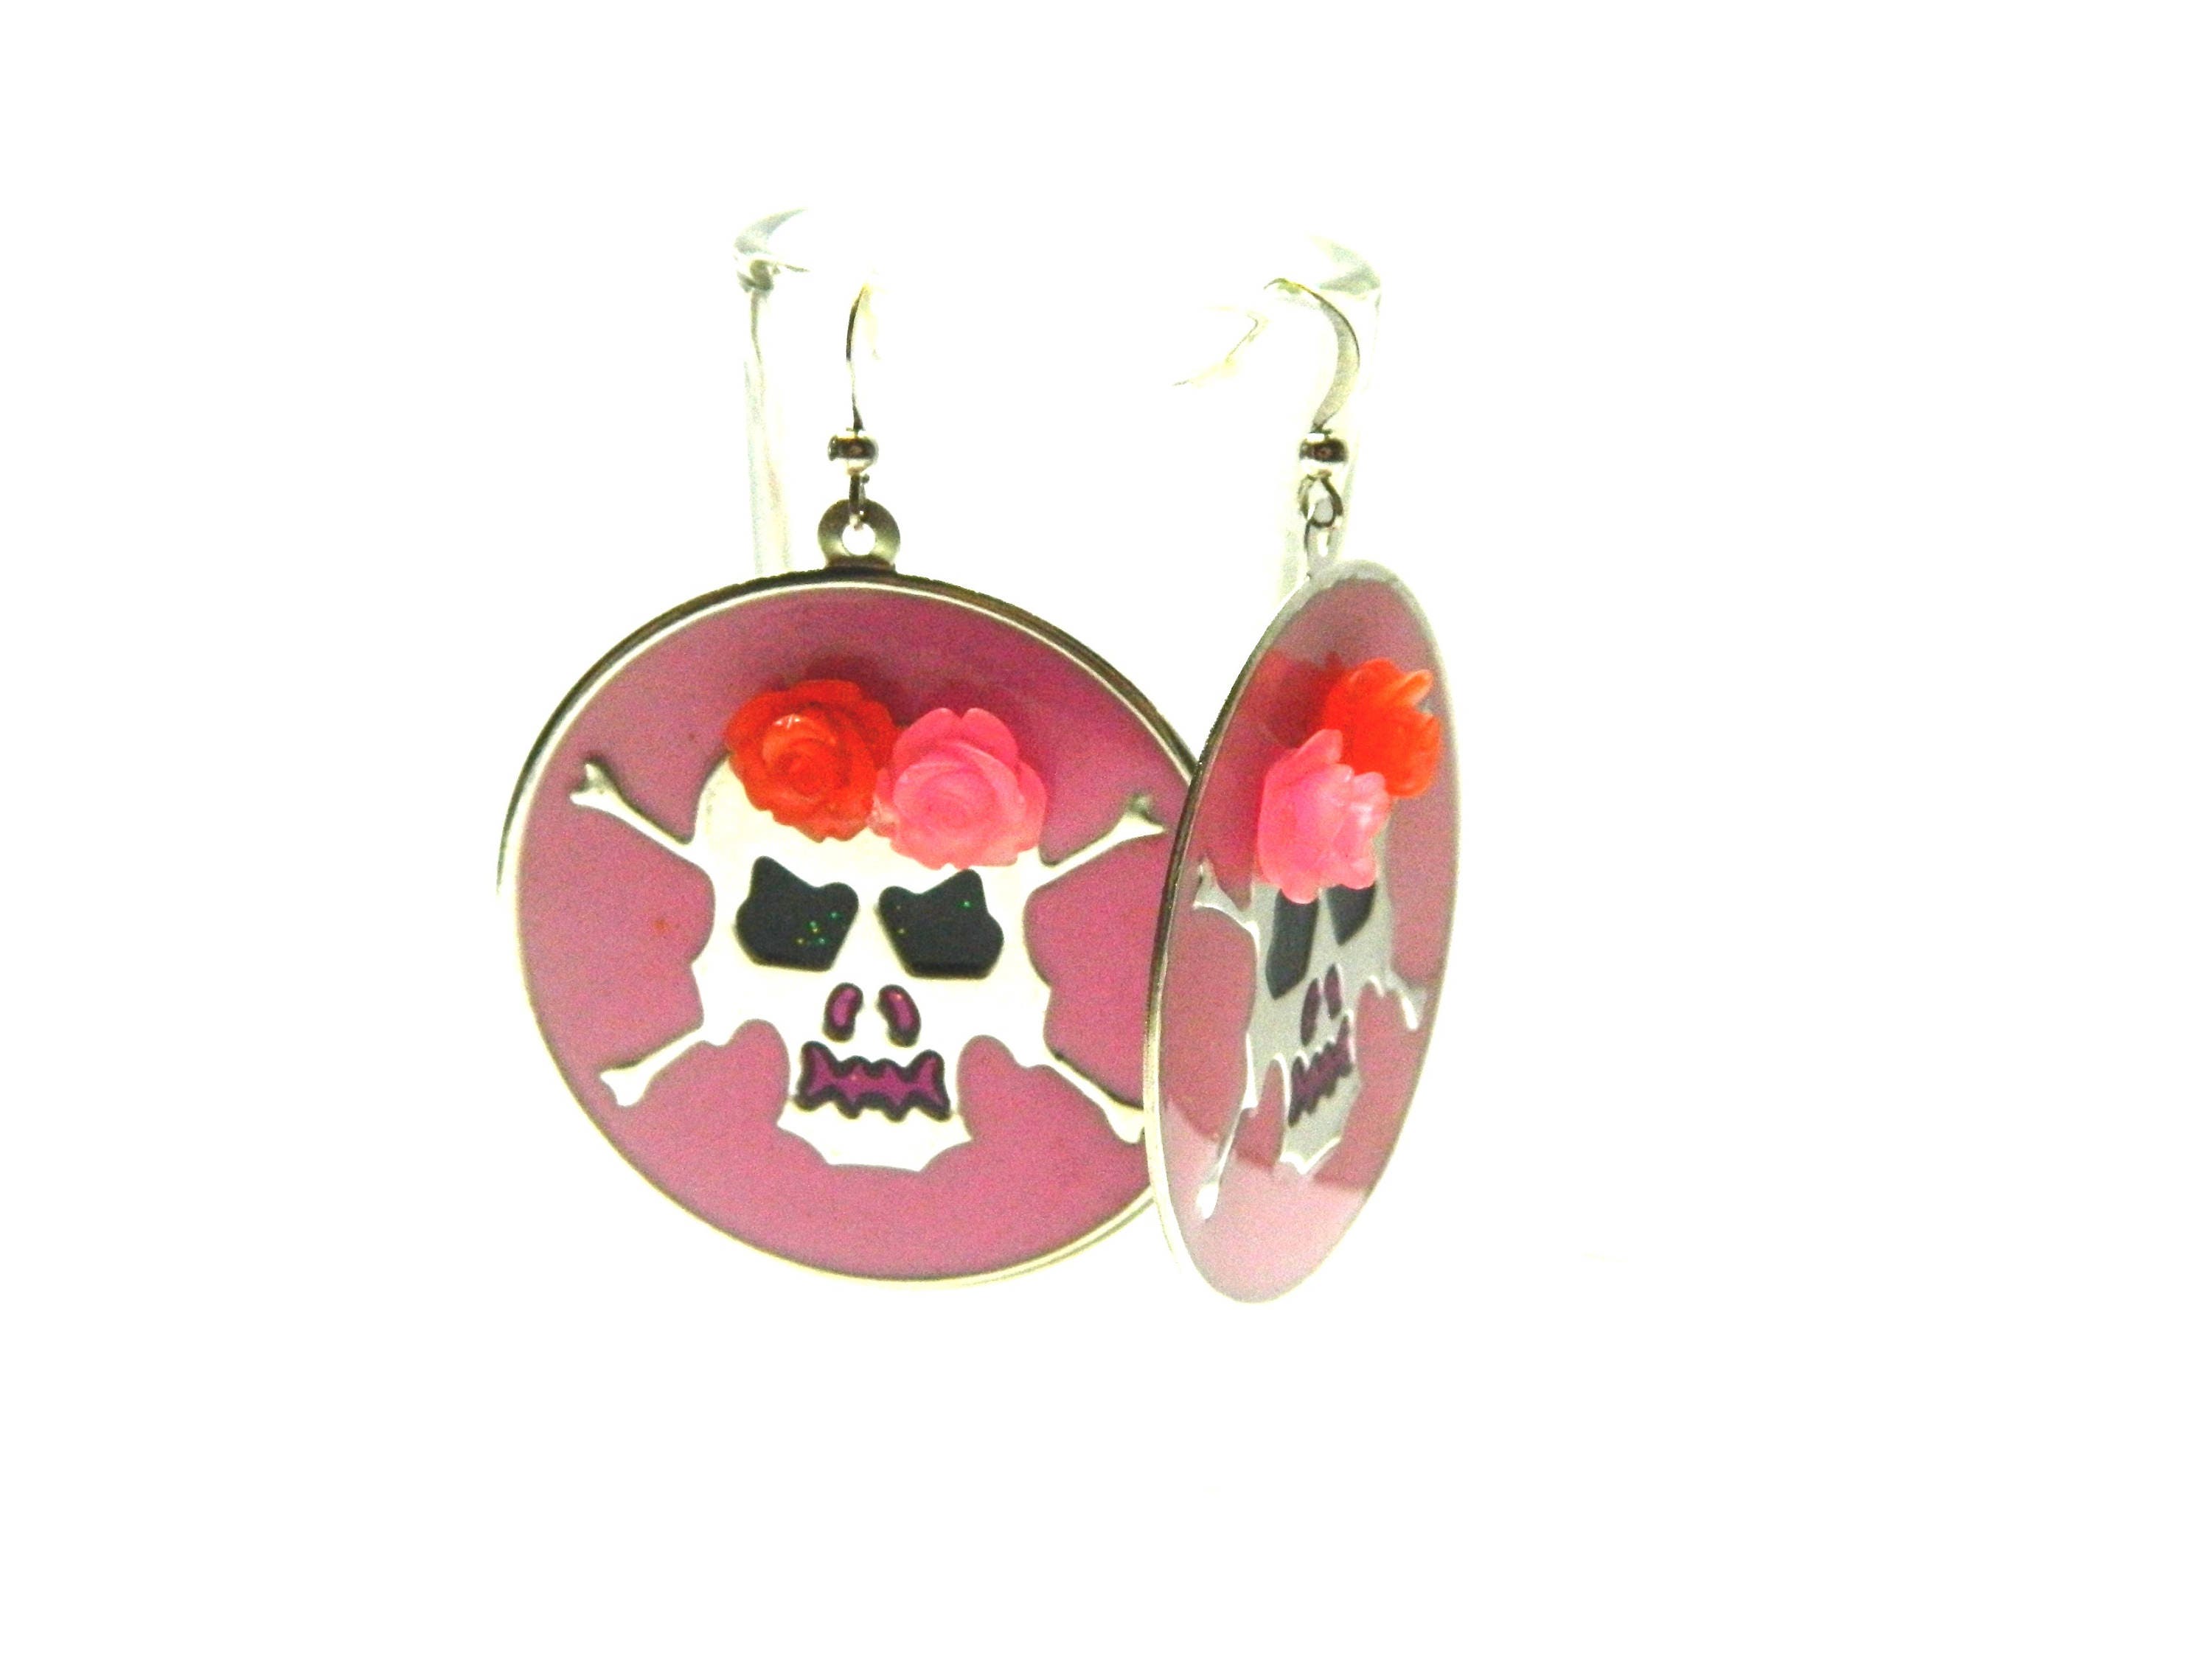 Sugar skull Halloween earrings pink & red roses crown silver | Etsy